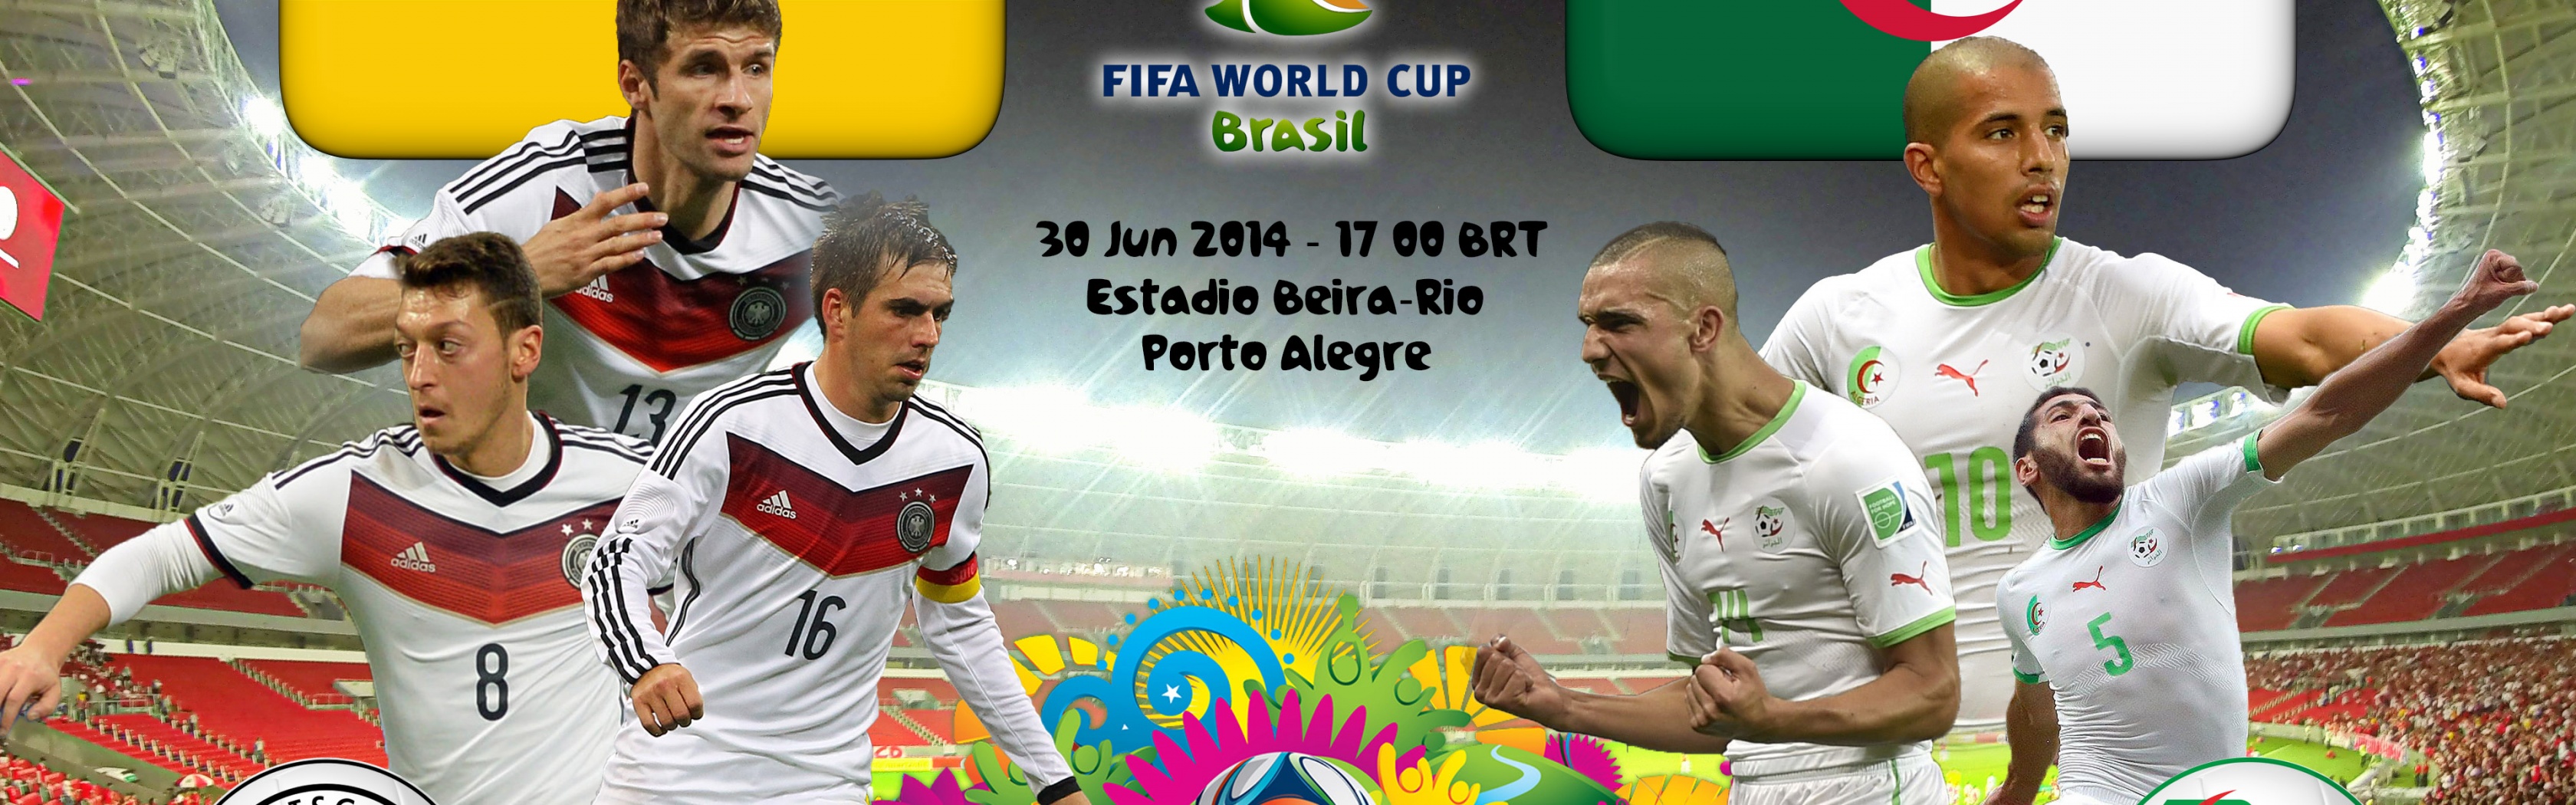 Germany Vs Algeria World Cup 2014